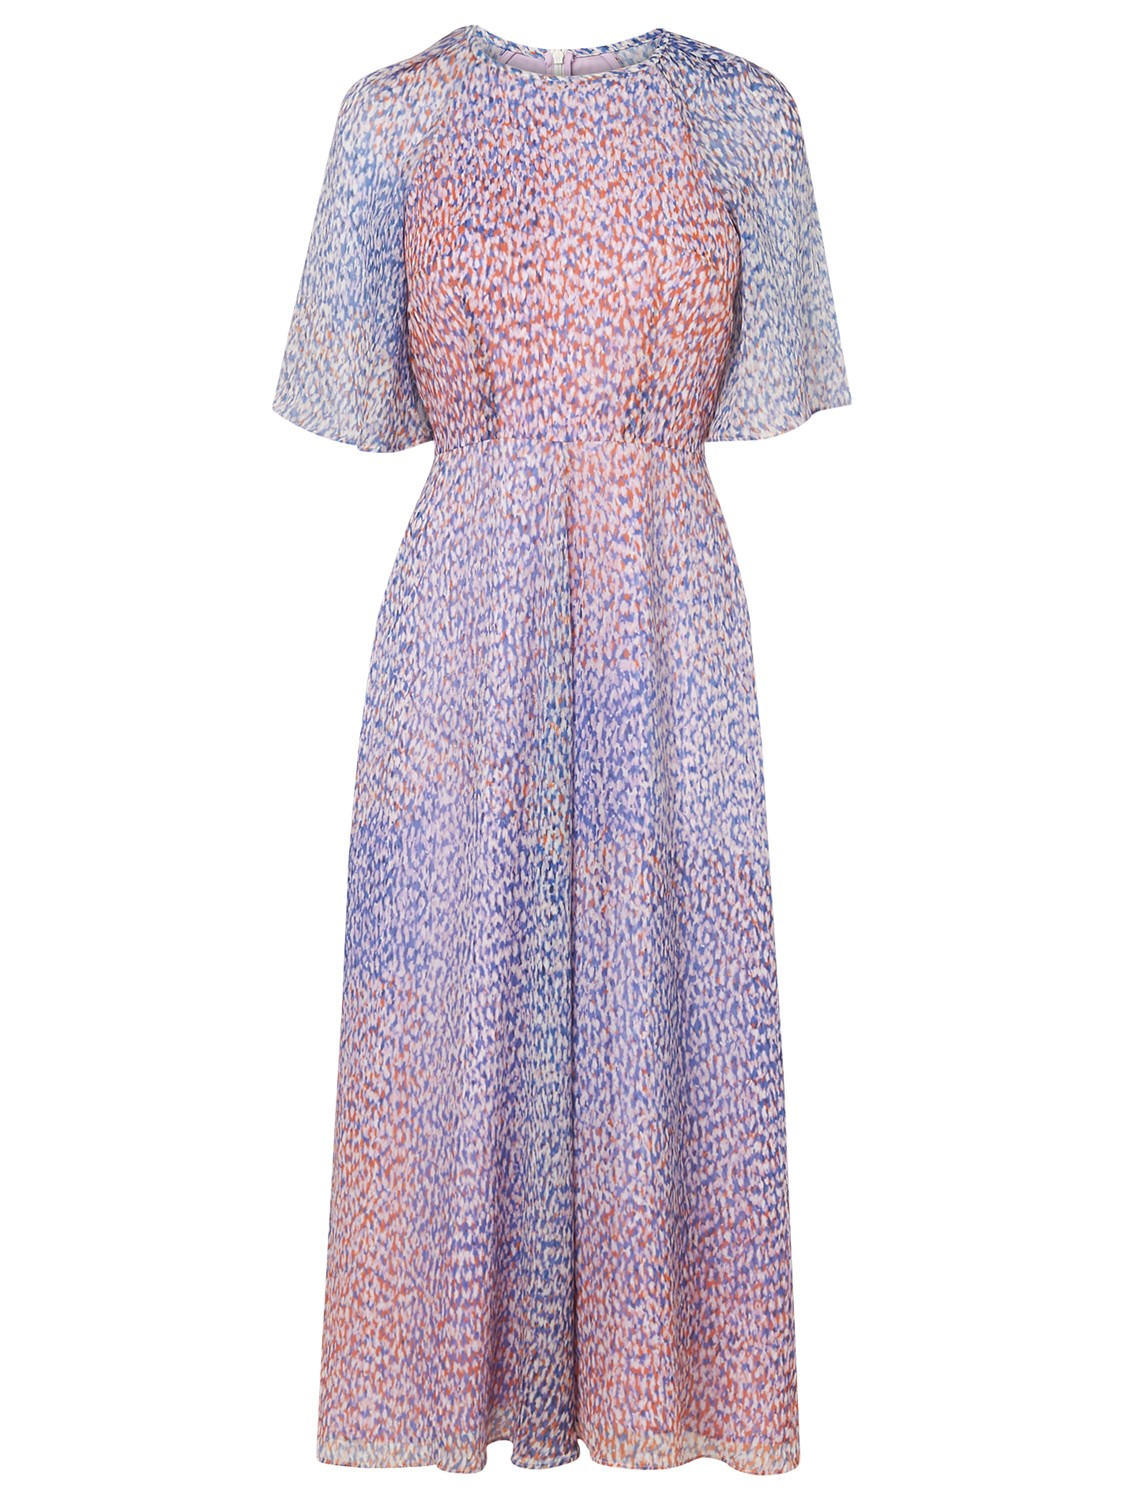 L.K.Bennett Madison Chiffon Print Dress - Lyst